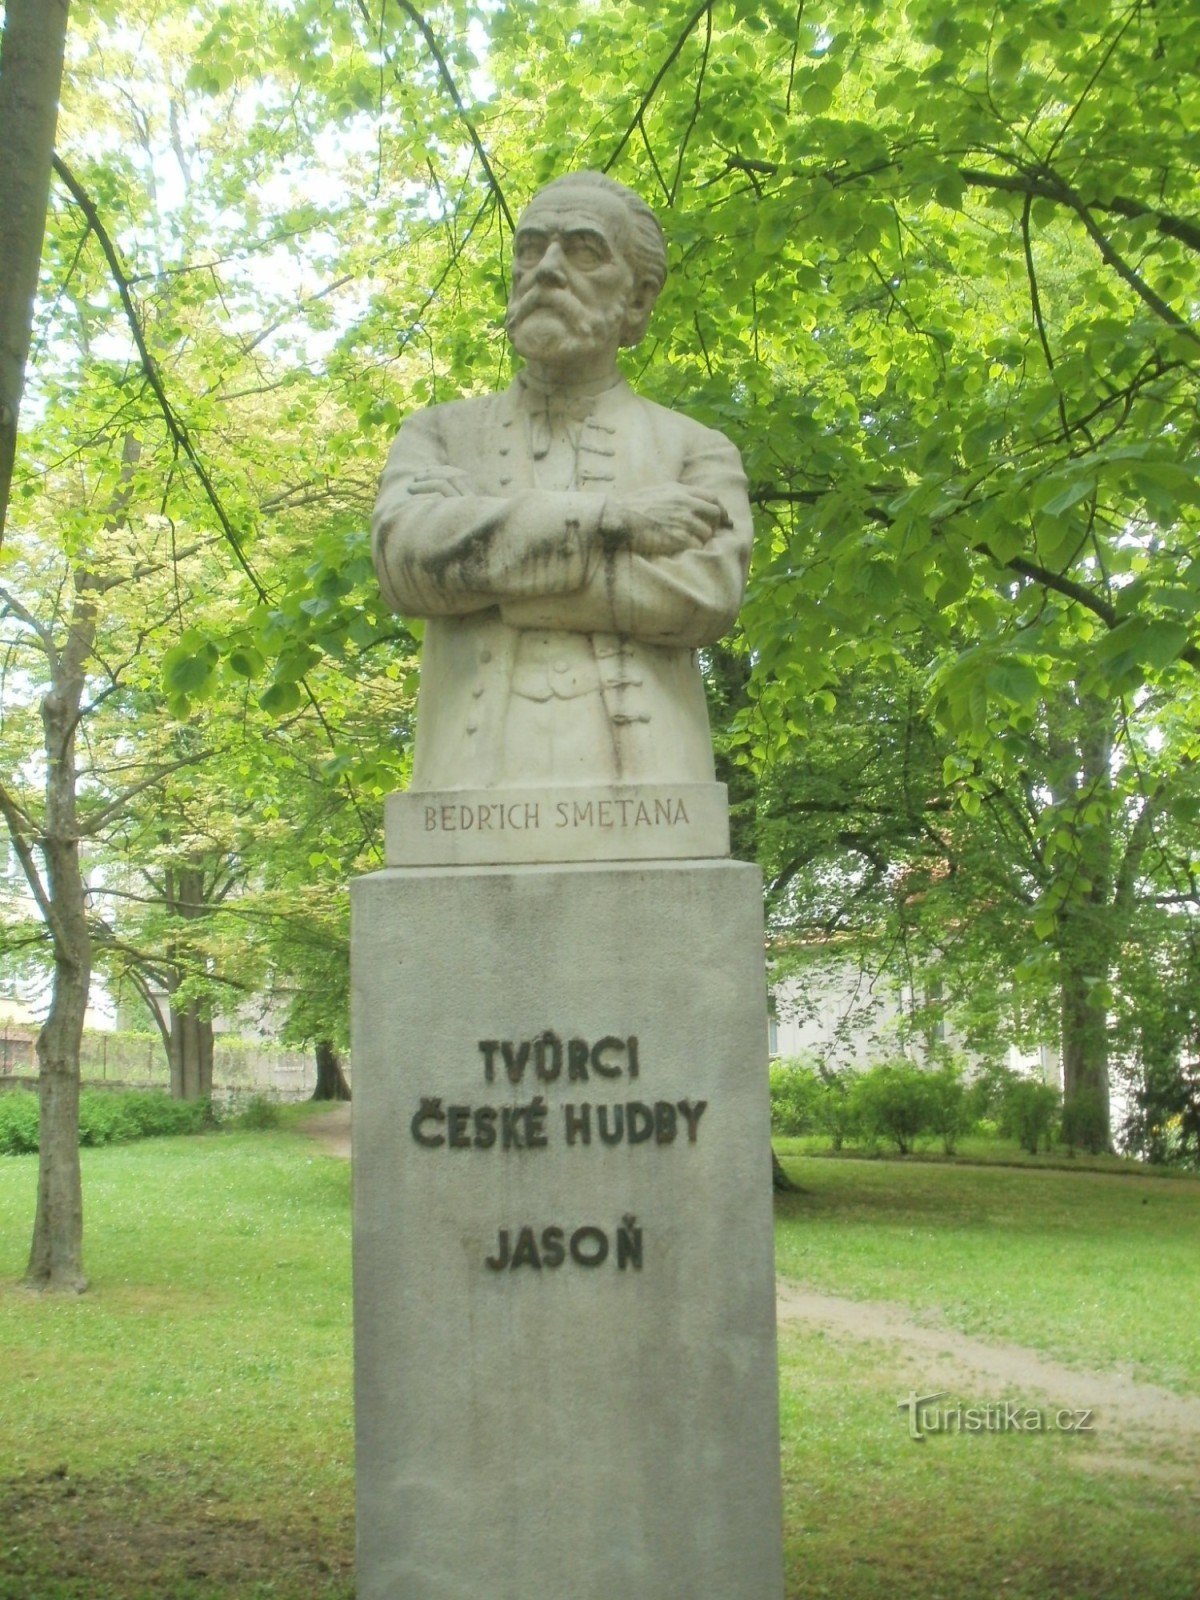 Havlíčkův Brod - monument over Bedřich Smetana